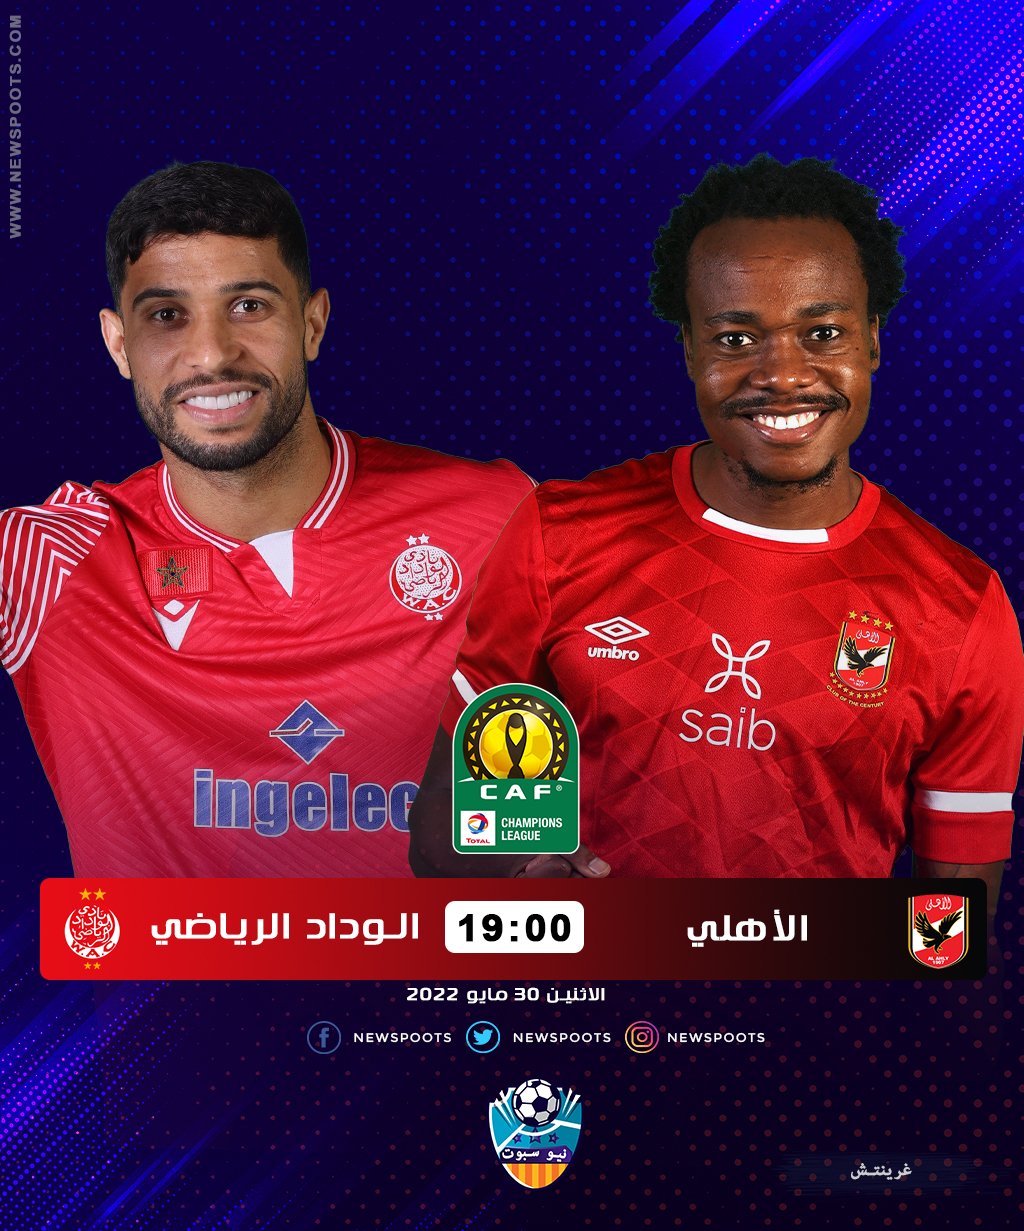 موعد مباراة الأهلي والوداد المغربي نهائي دوري أبطال إفريقيا 2022 والقنوات الناقلة